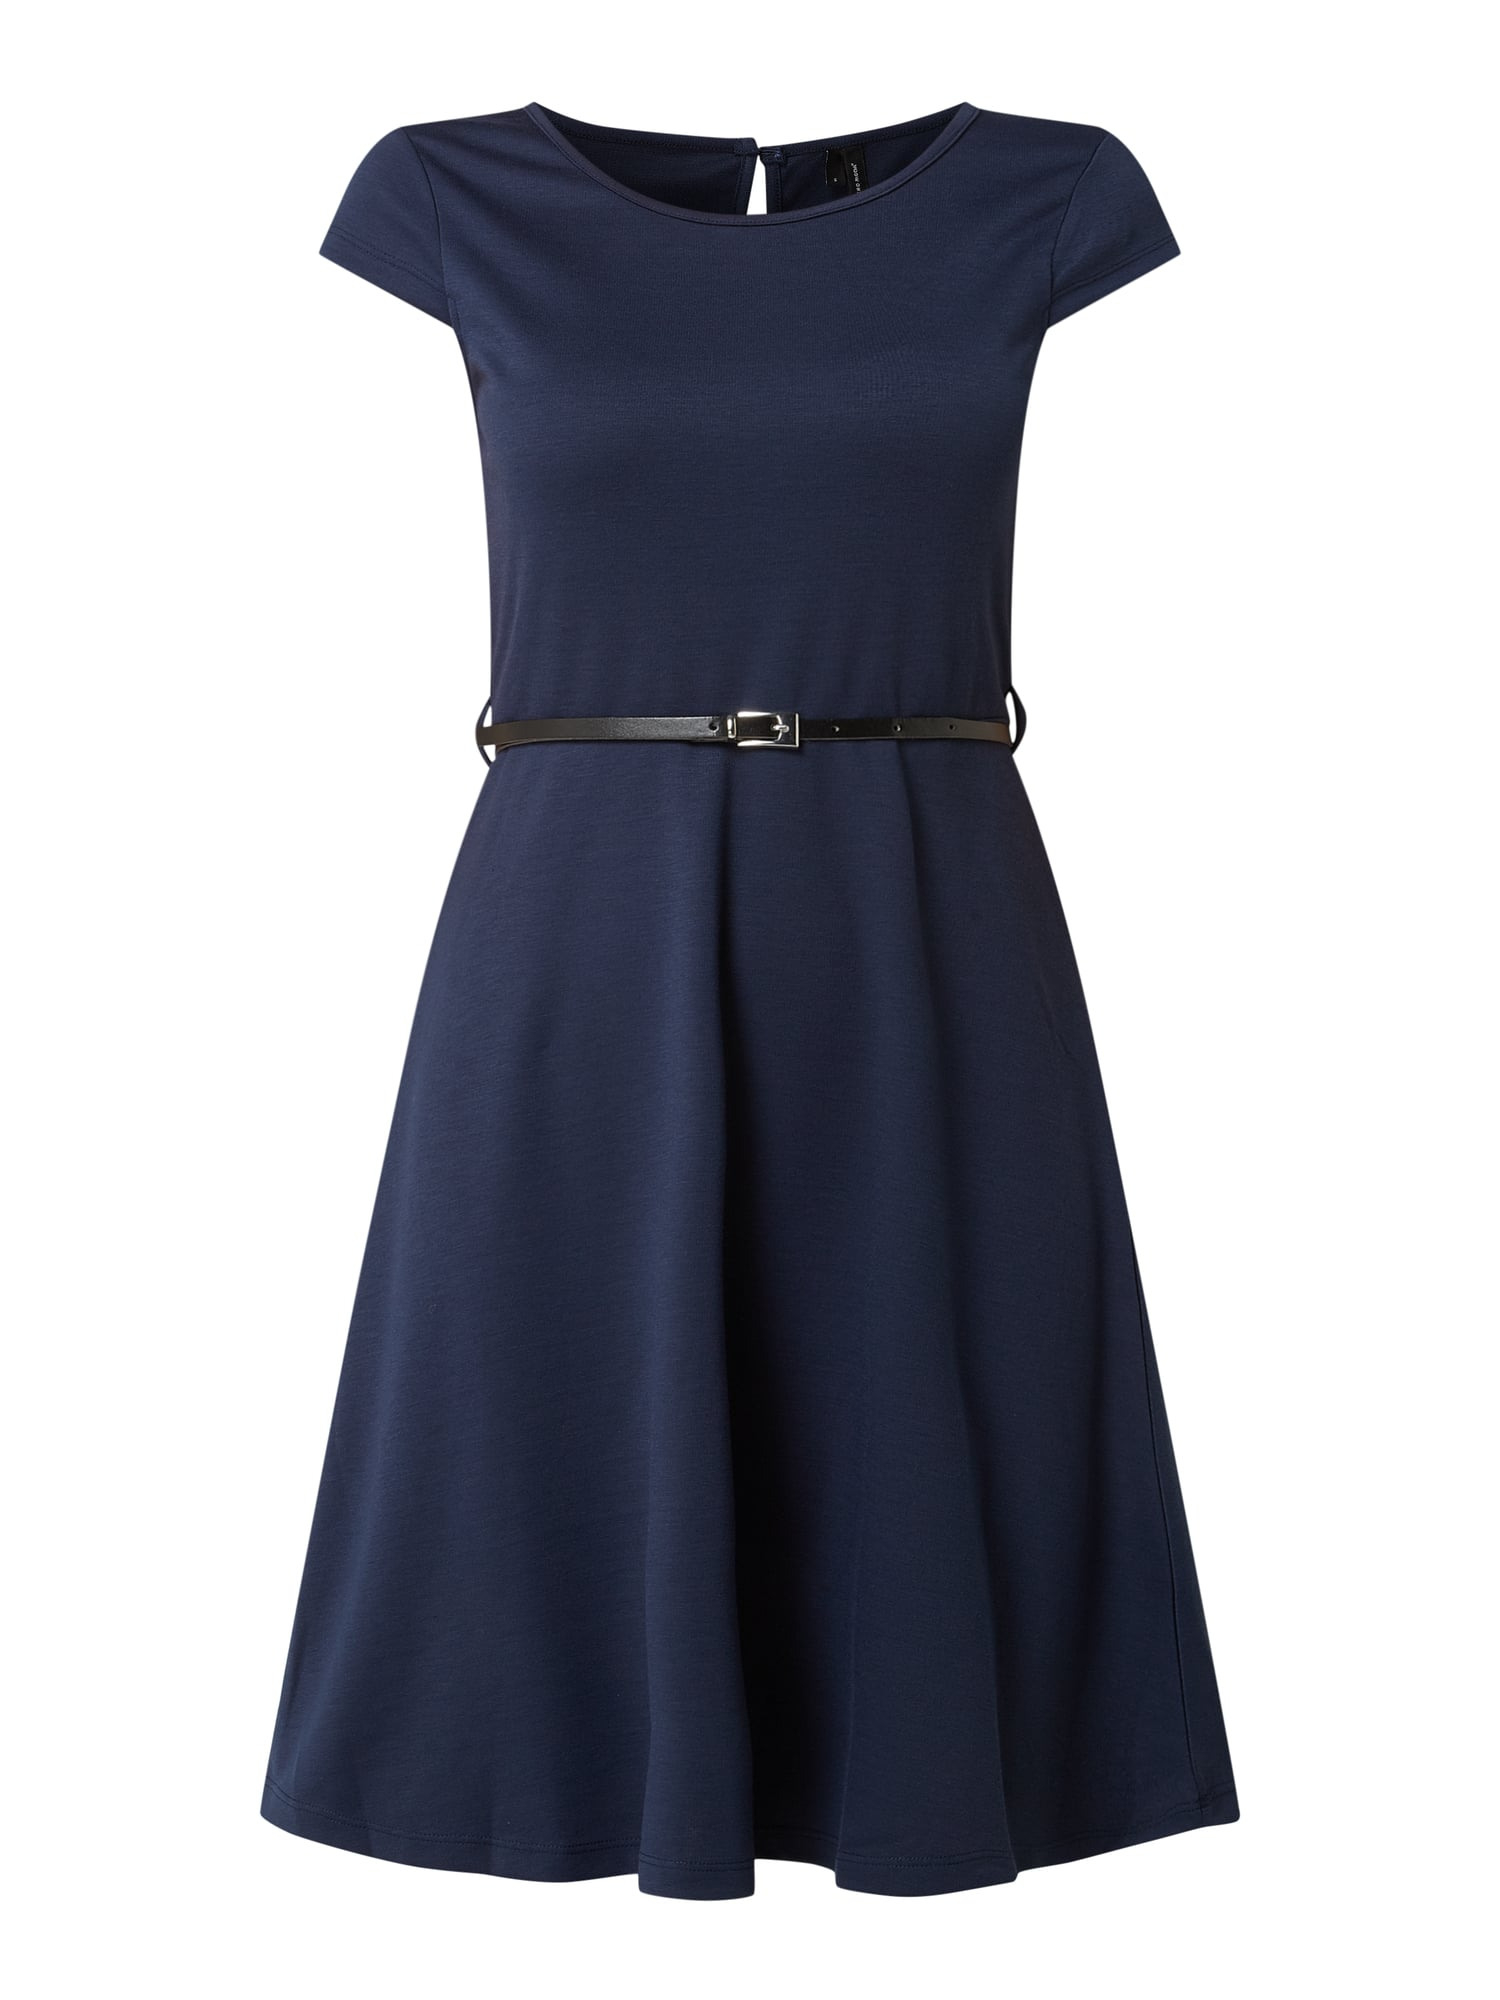 Vero Moda Kleid Mit Taillengürtel Modell 'Vigga' In Blau